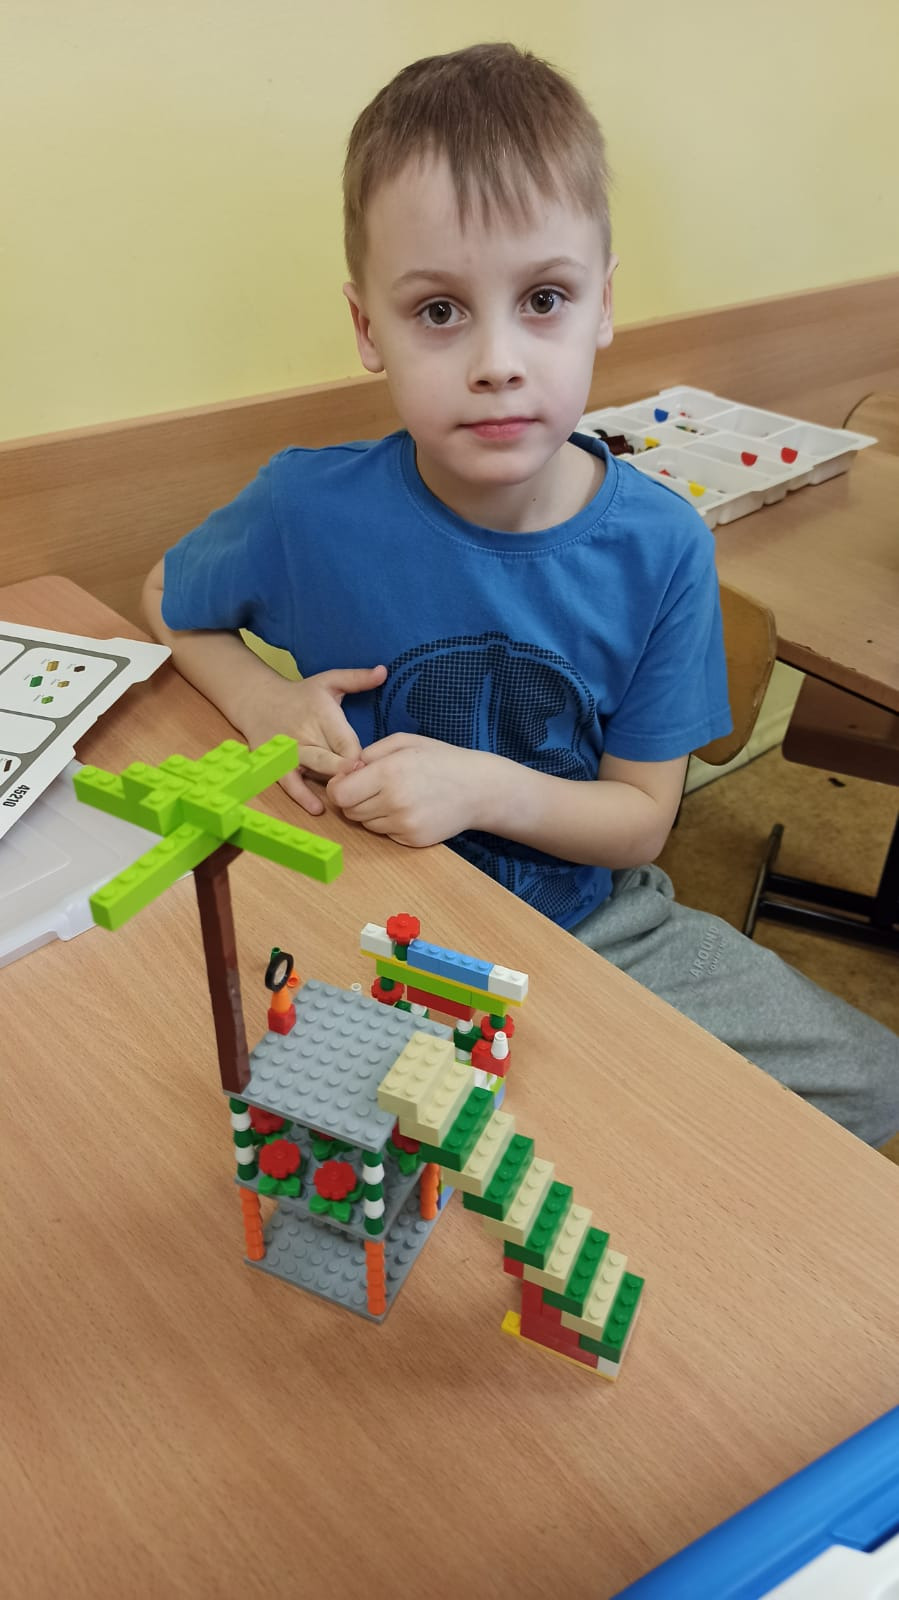  Międzynarodowy Dzień LEGO oraz Międzynarodowy Dzień Puzzli w szkole